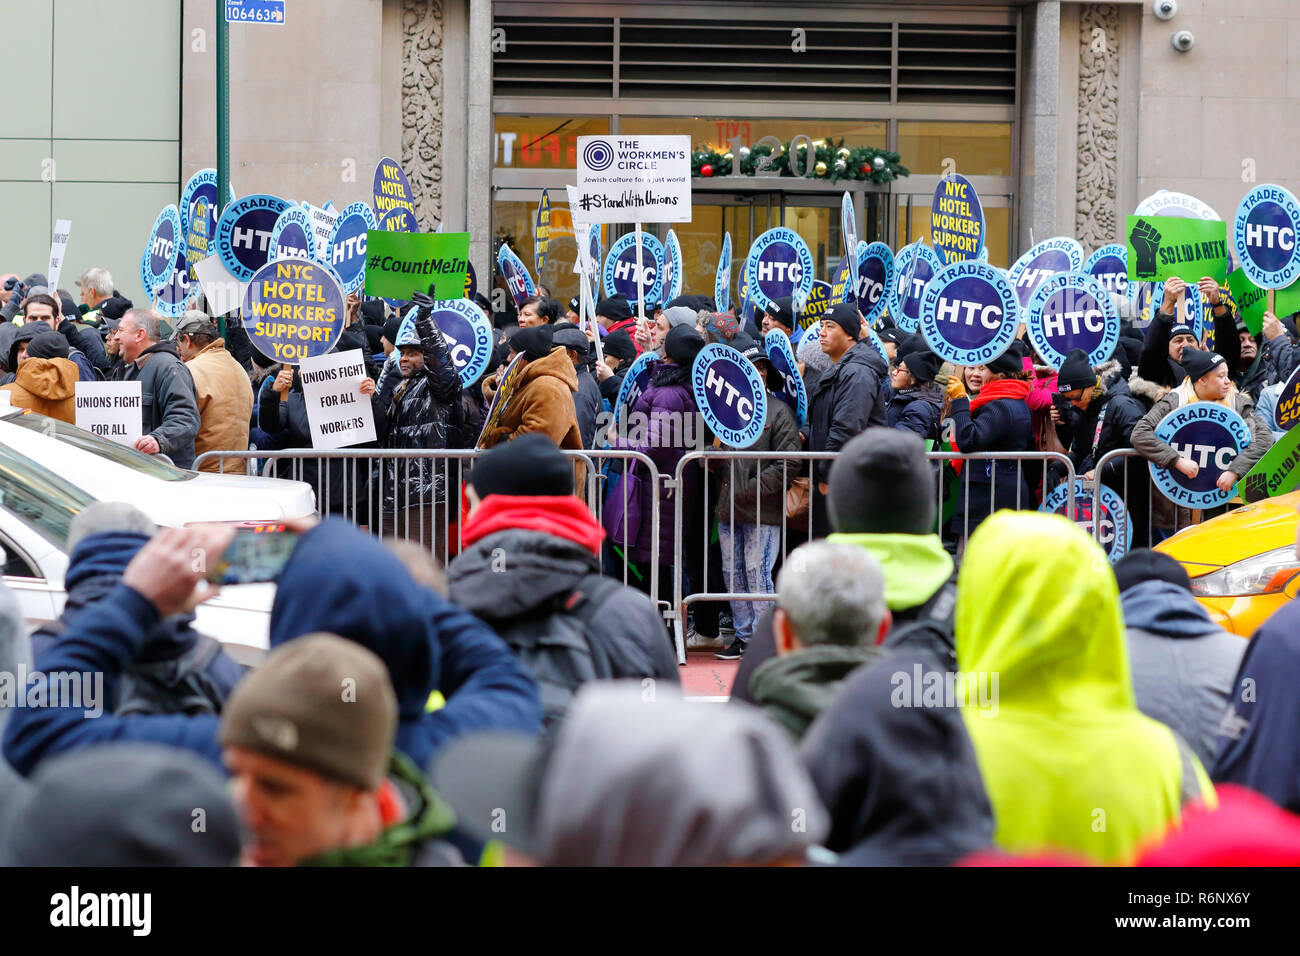 Un travail de l'union/rassemblement de protestation devant la location de fréquences dans la ville de New York (le 5 décembre 2018) Banque D'Images